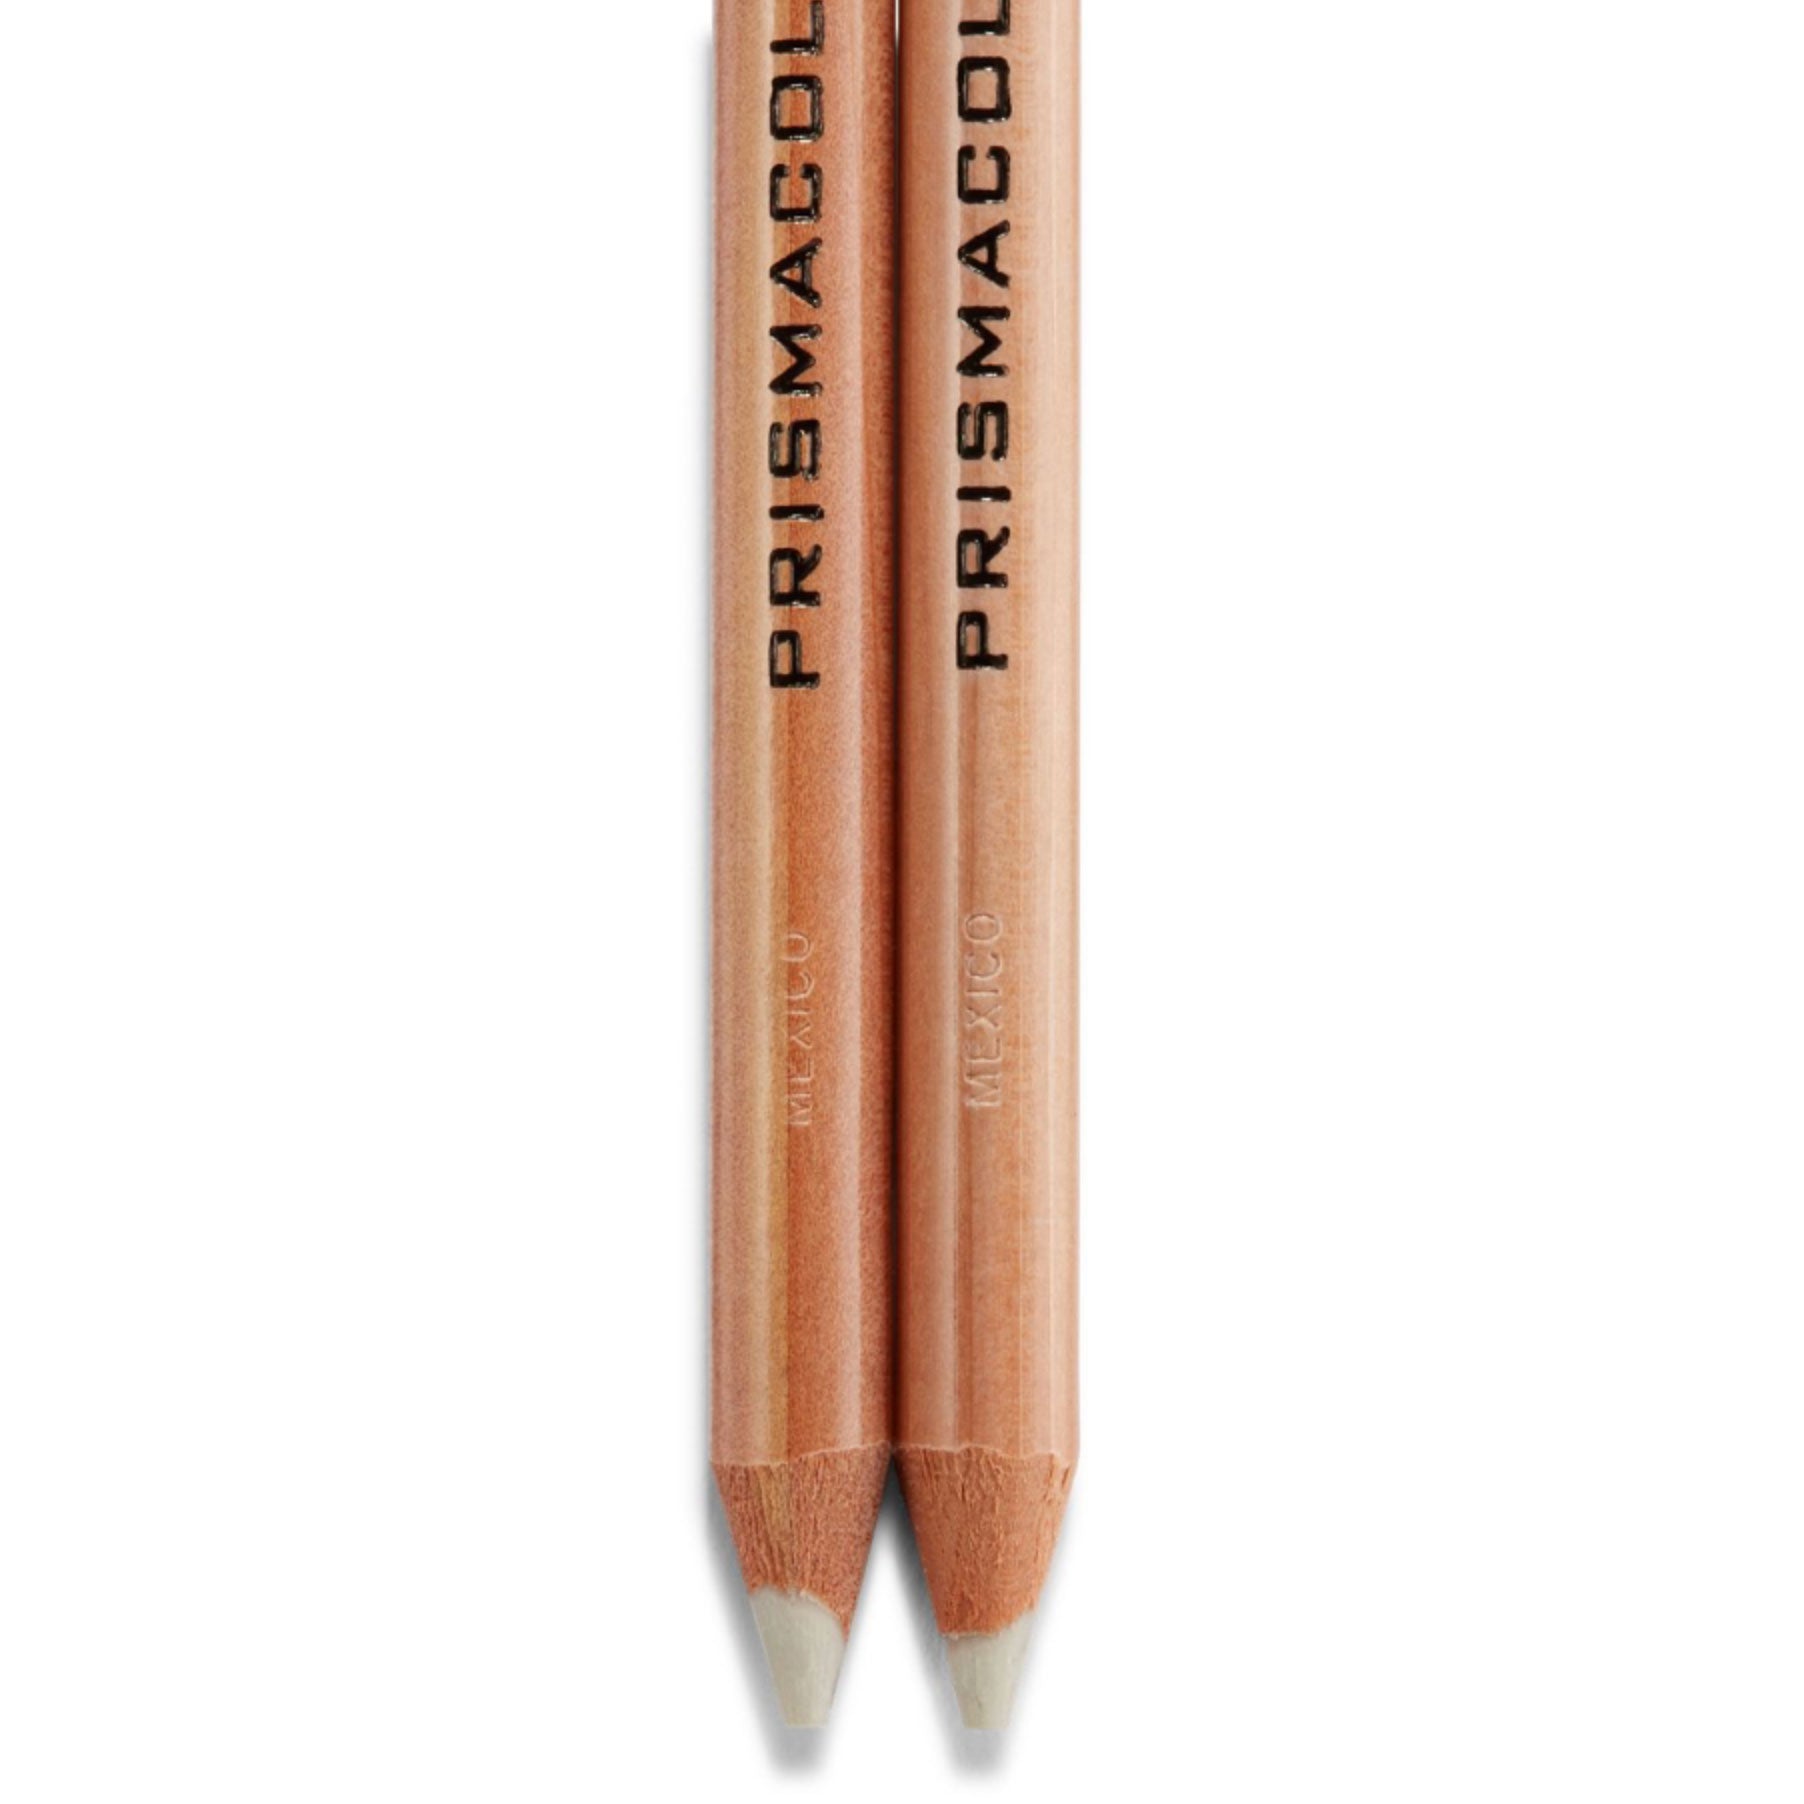 Prismacolor Premier Colorless Blender Pencil - 12 Count